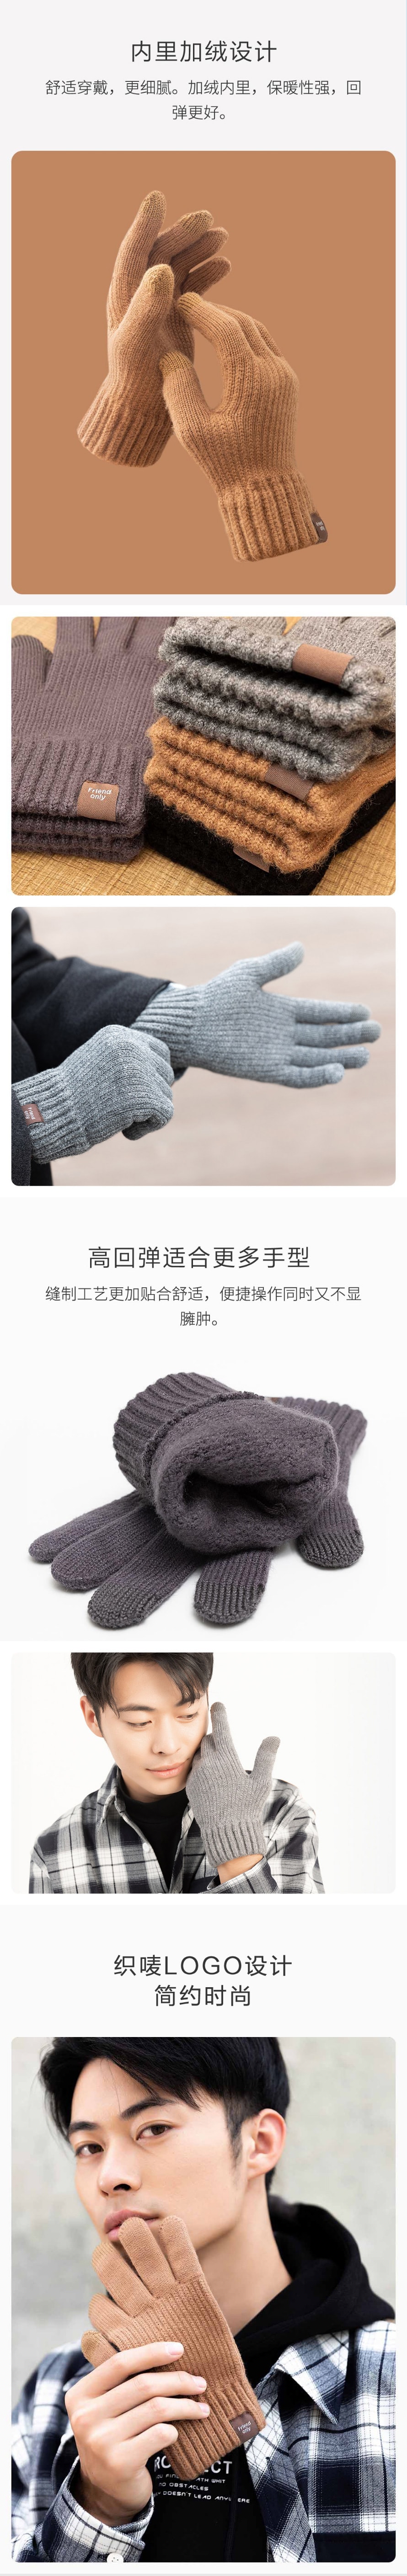 【中国直邮】小米有品 FO三指触屏暖绒手套 暖绒灰 均码